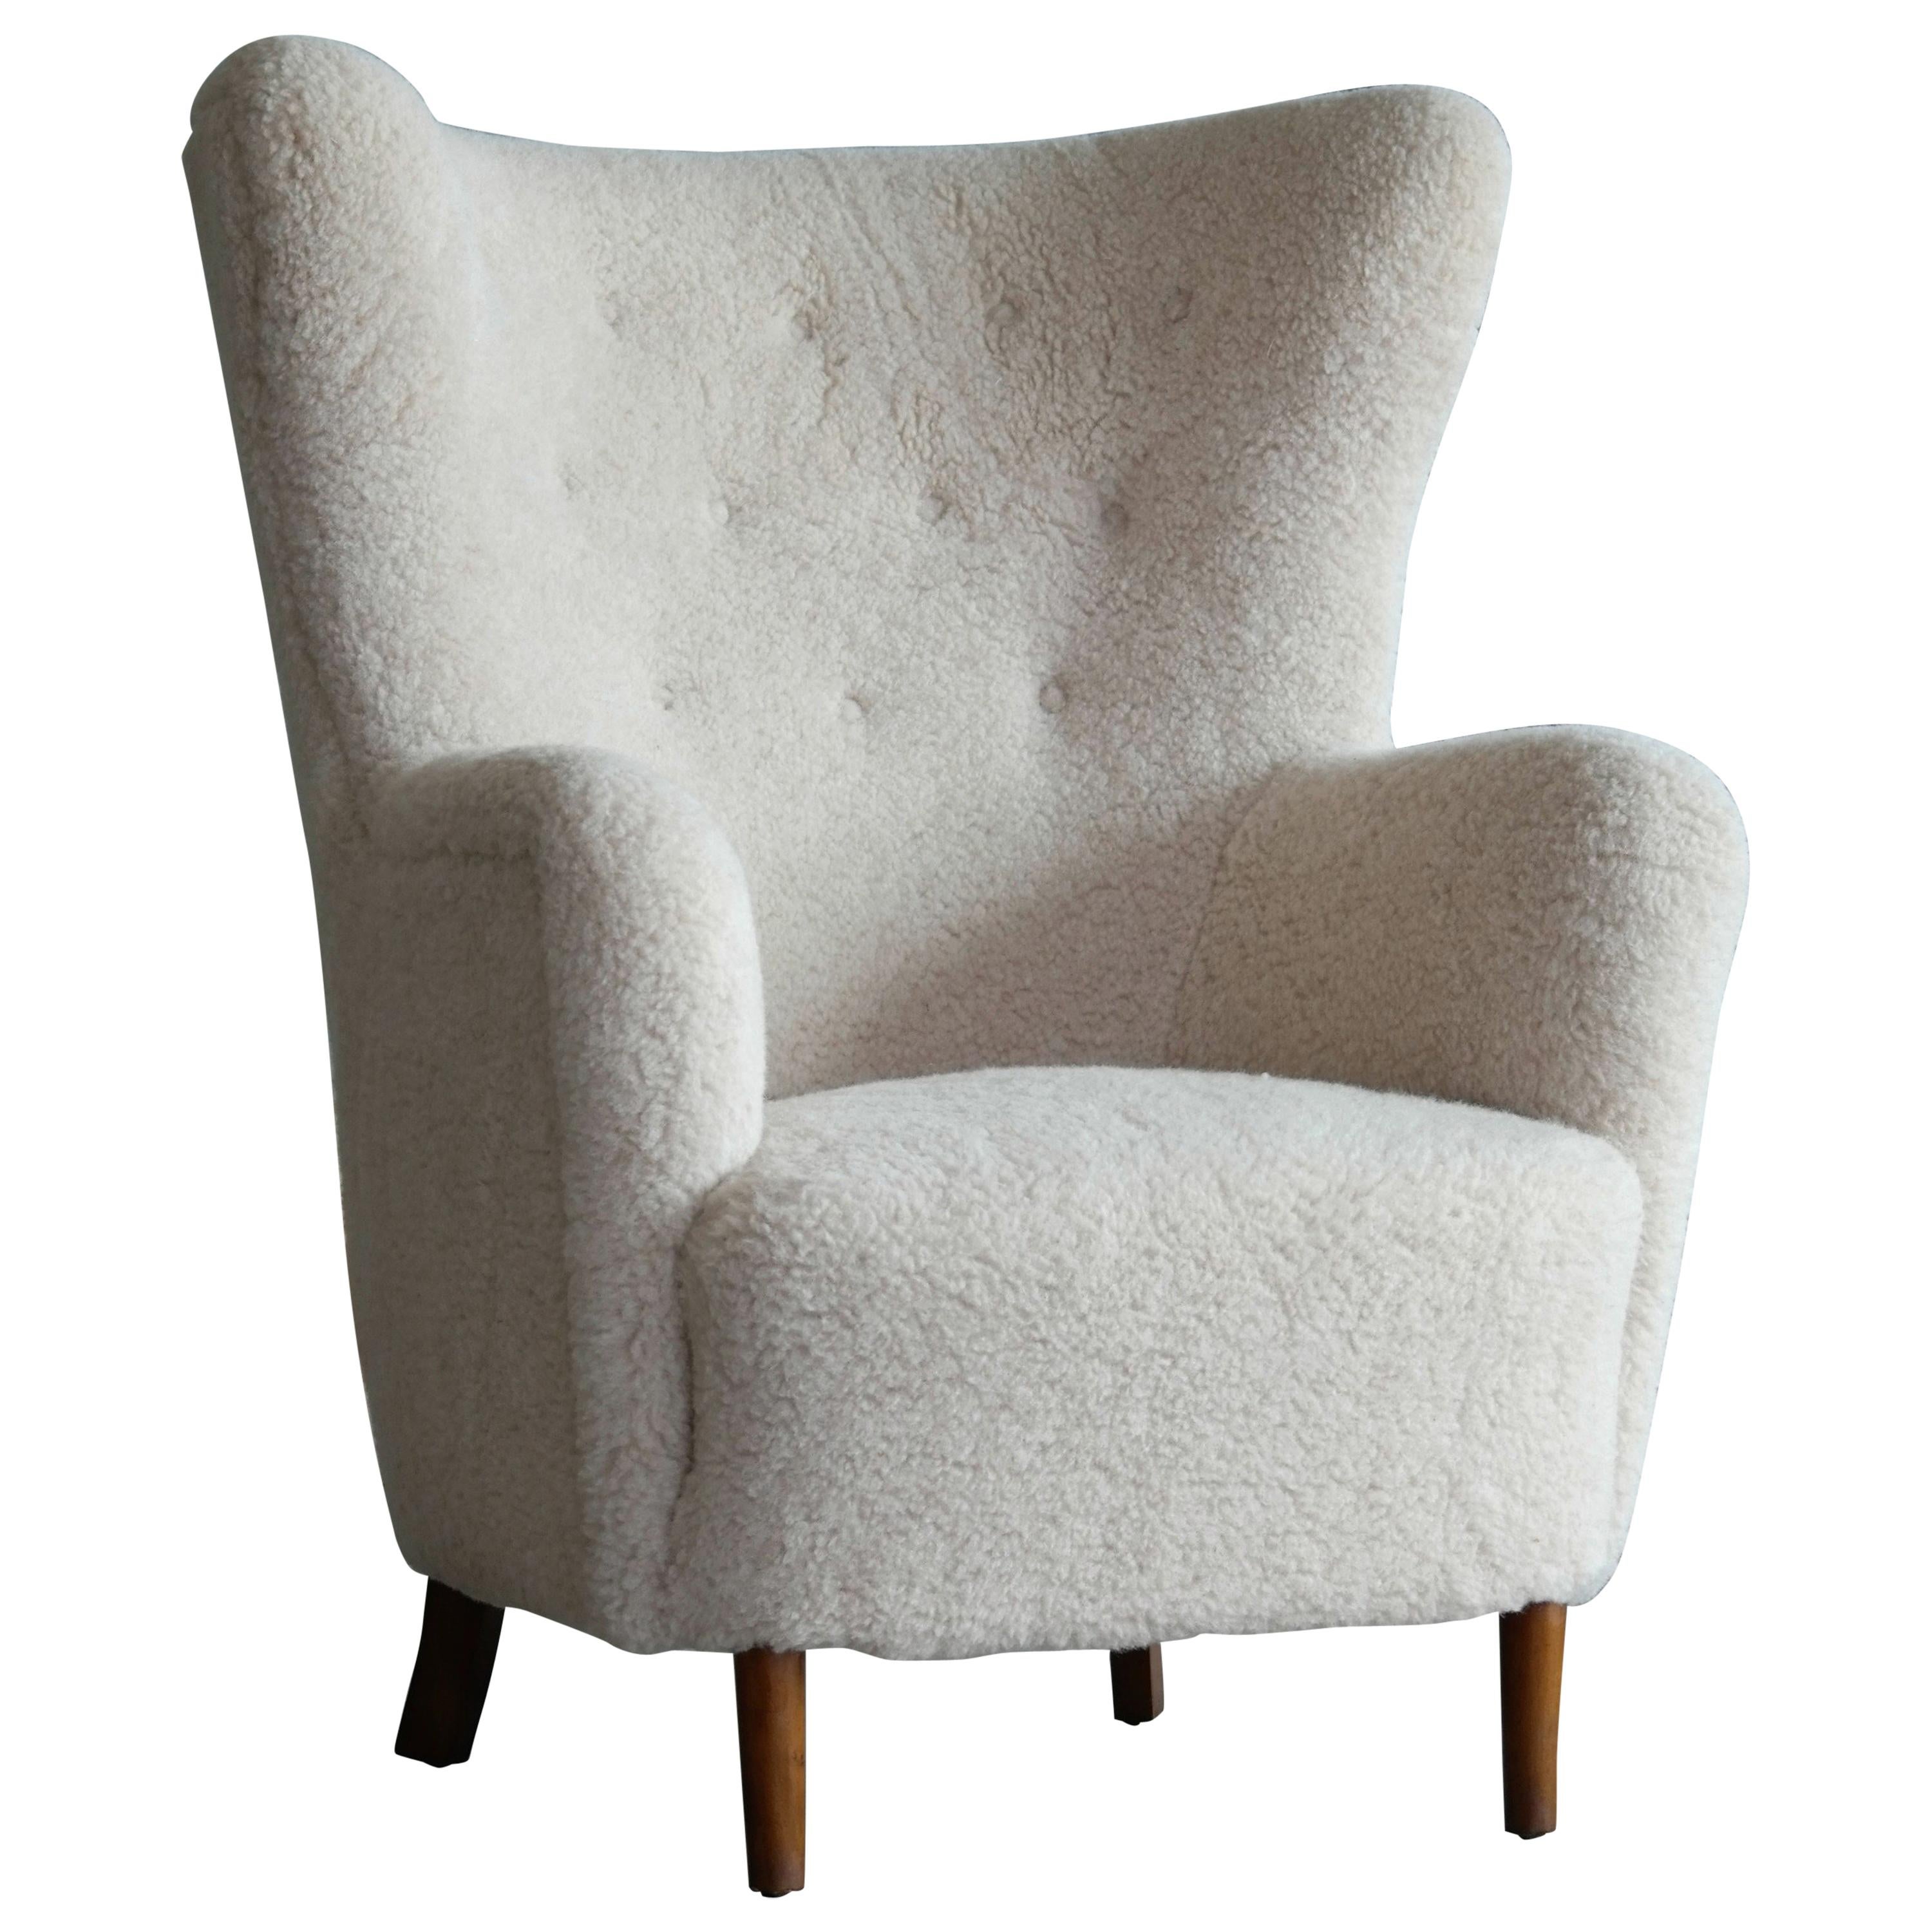 Danish 1940s High Back Lounge Chair in Beige Lambswool in Flemming Lassen Style